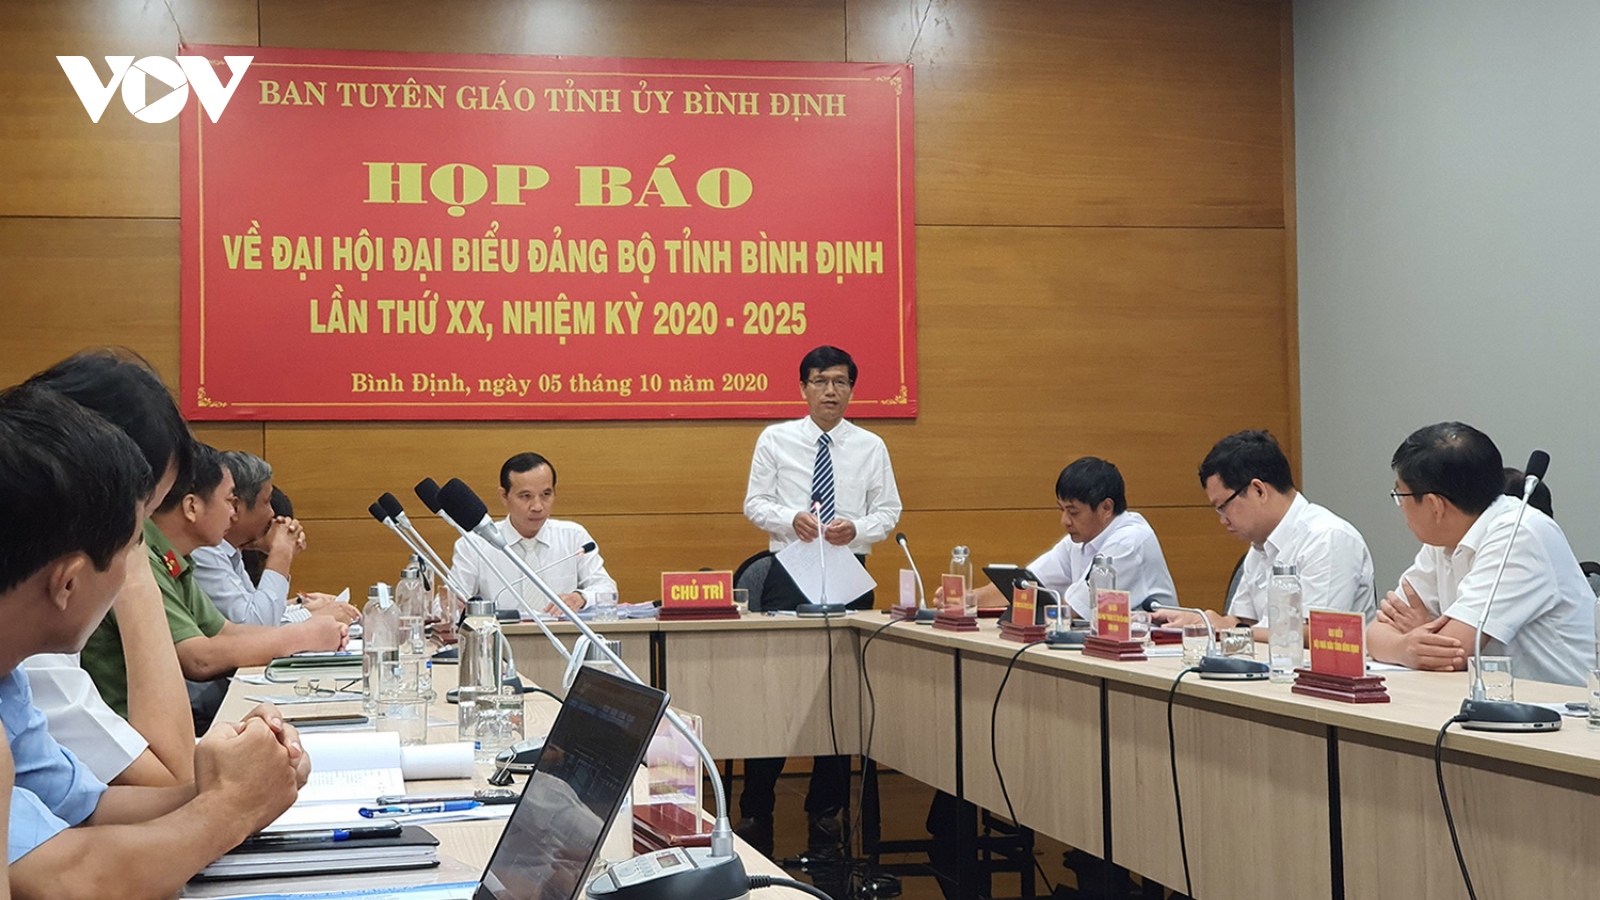 Bình Định: Chuẩn bị chu đáo Báo cáo Chính trị Đại hội Đảng bộ tỉnh lần thứ XX